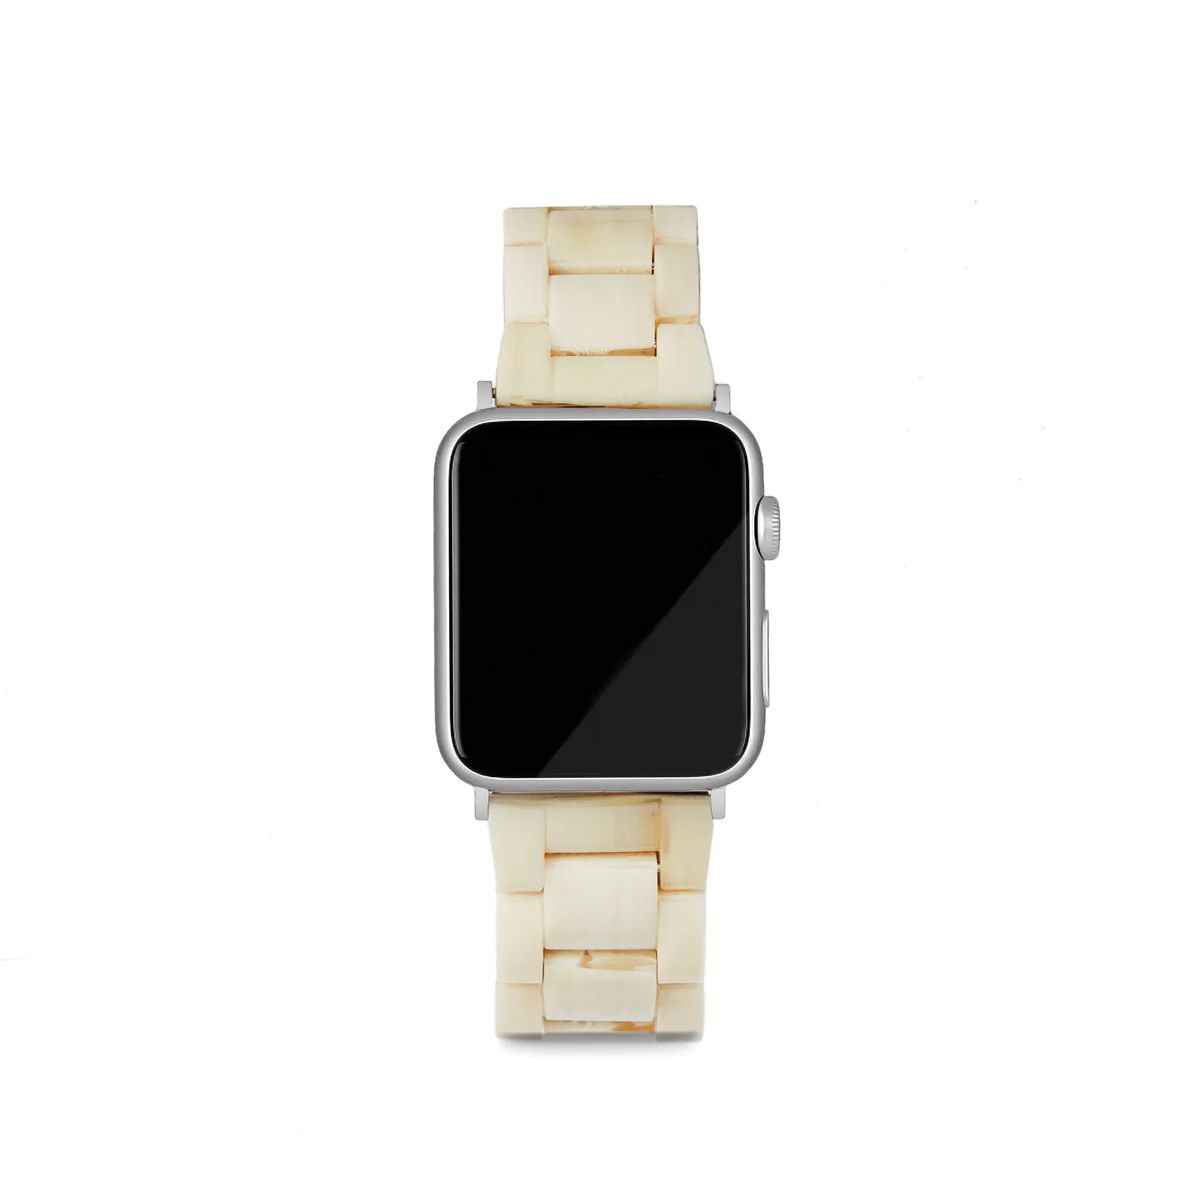 Apple Watch Band in Alabaster | Machete